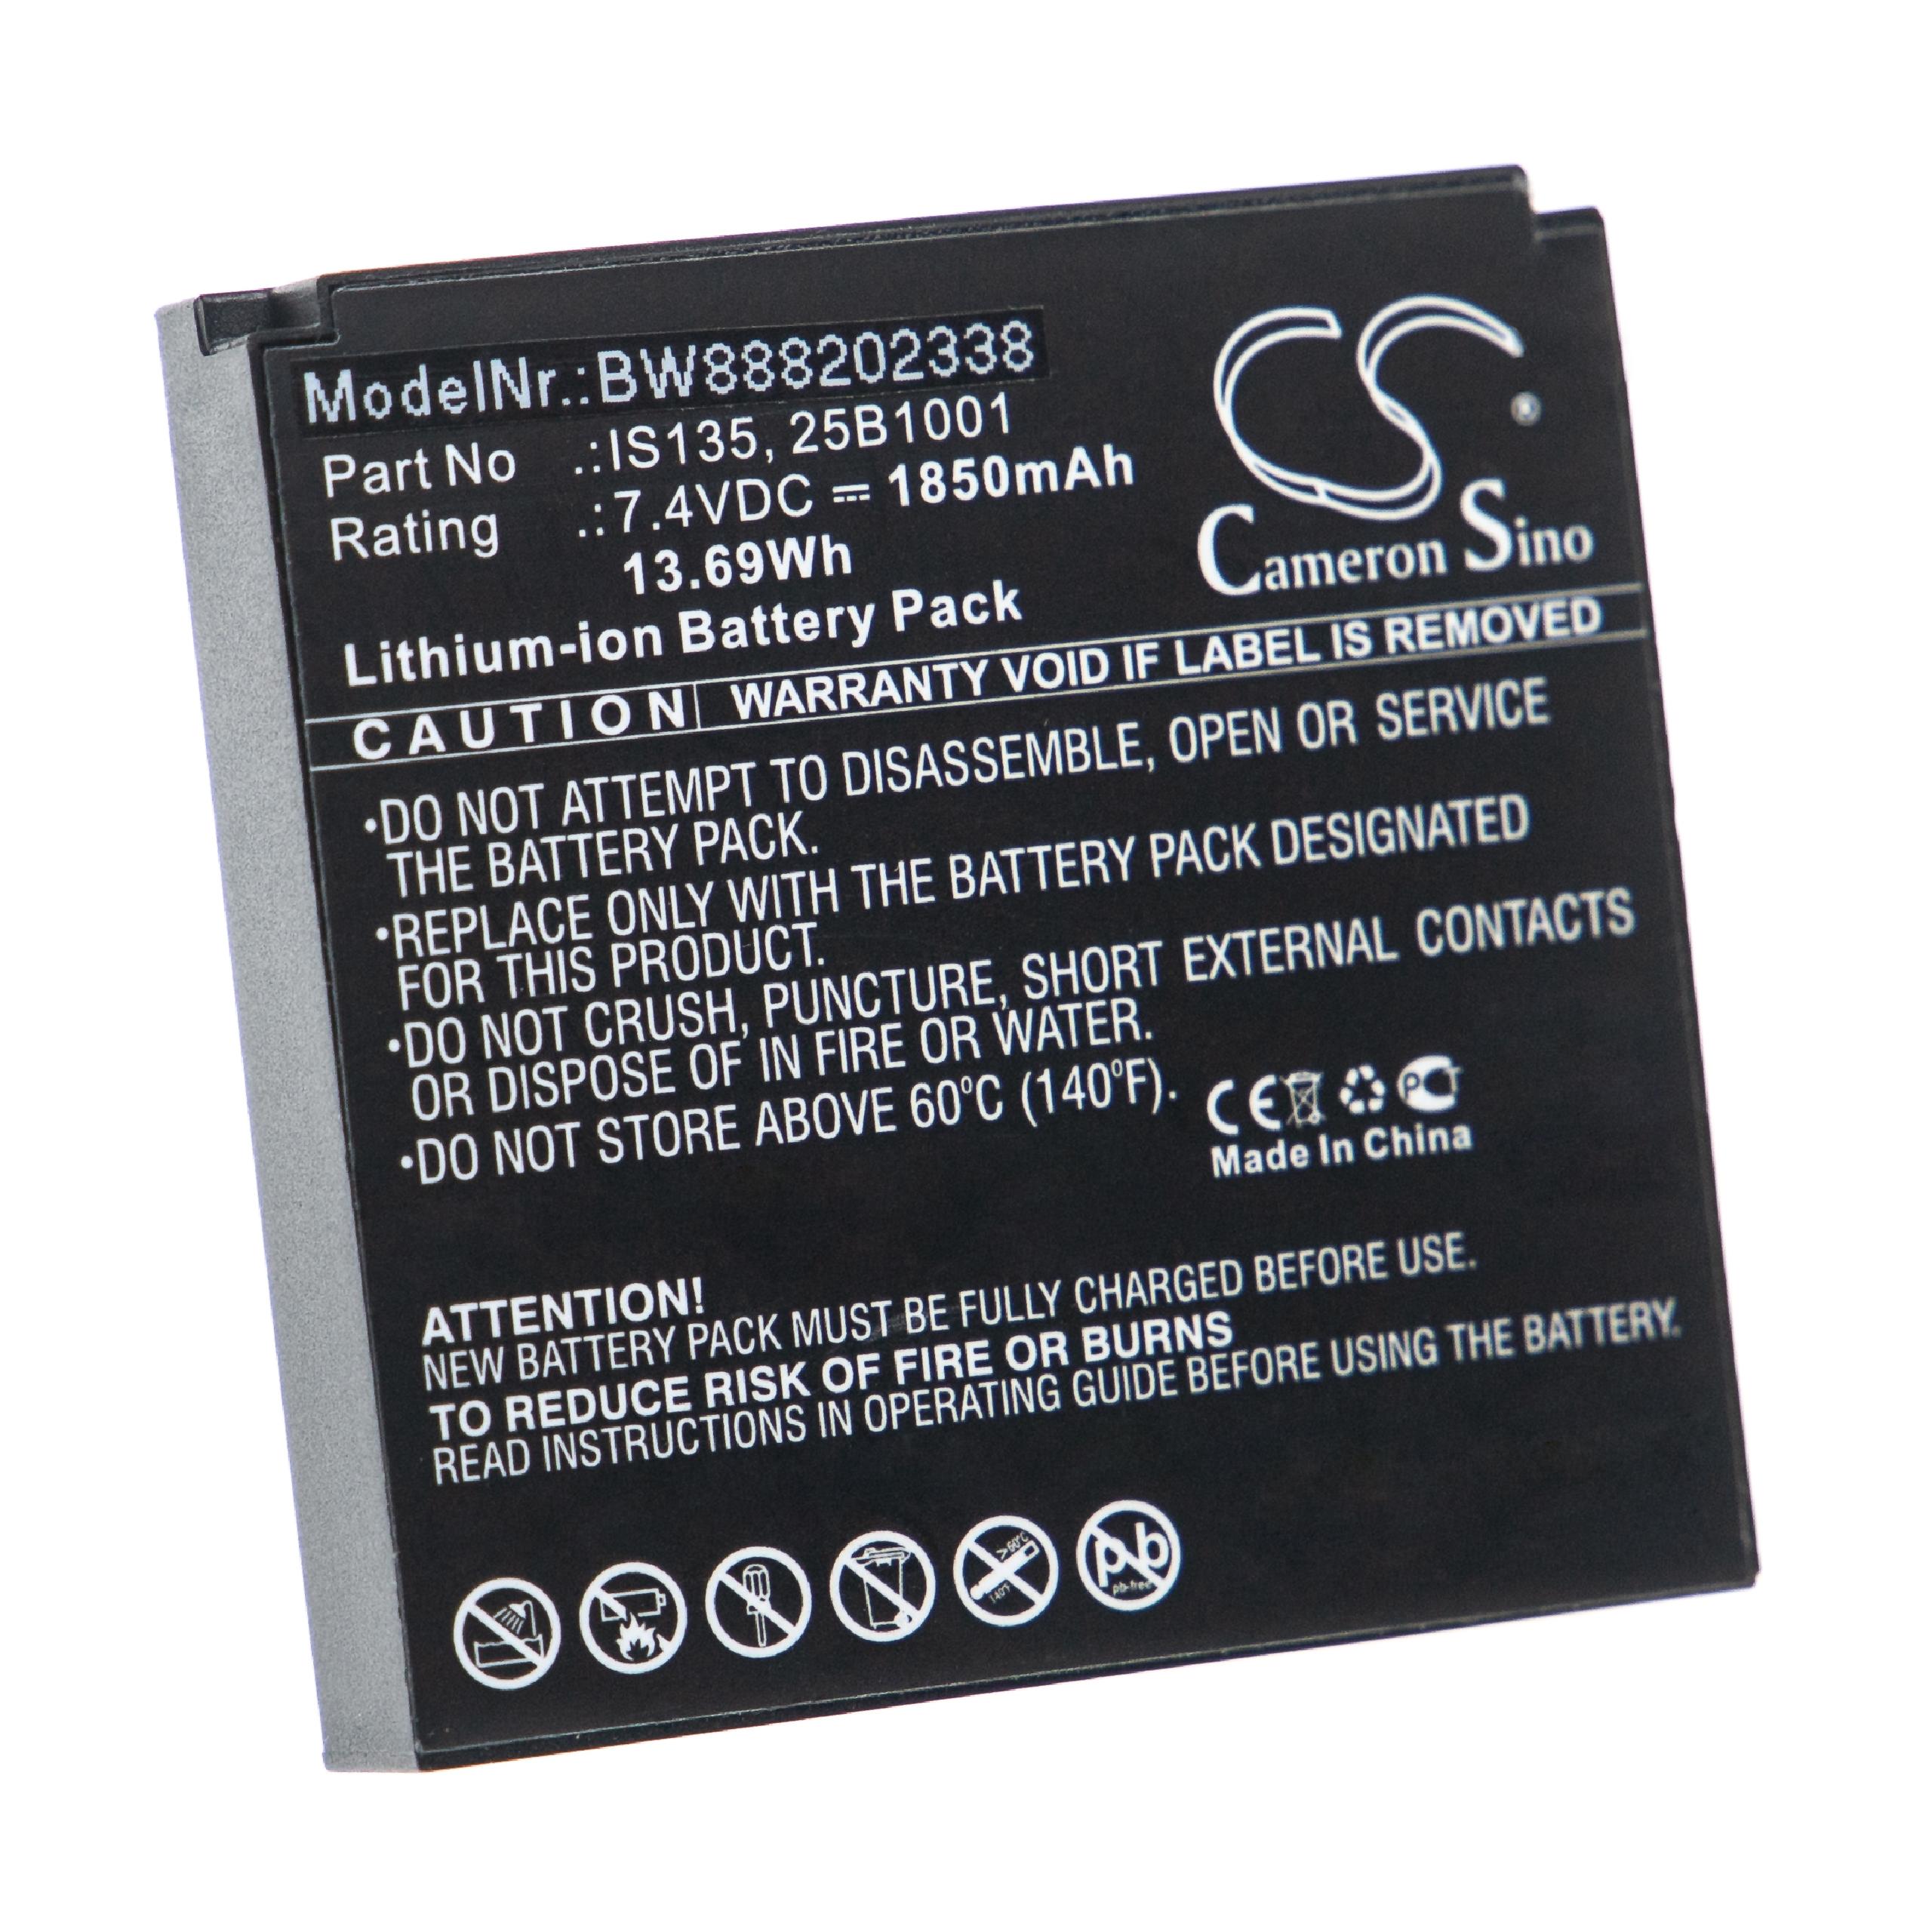 Batterie remplace Pax IS135, 25B1001 pour scanner de code-barre - 1850mAh 7,4V Li-ion